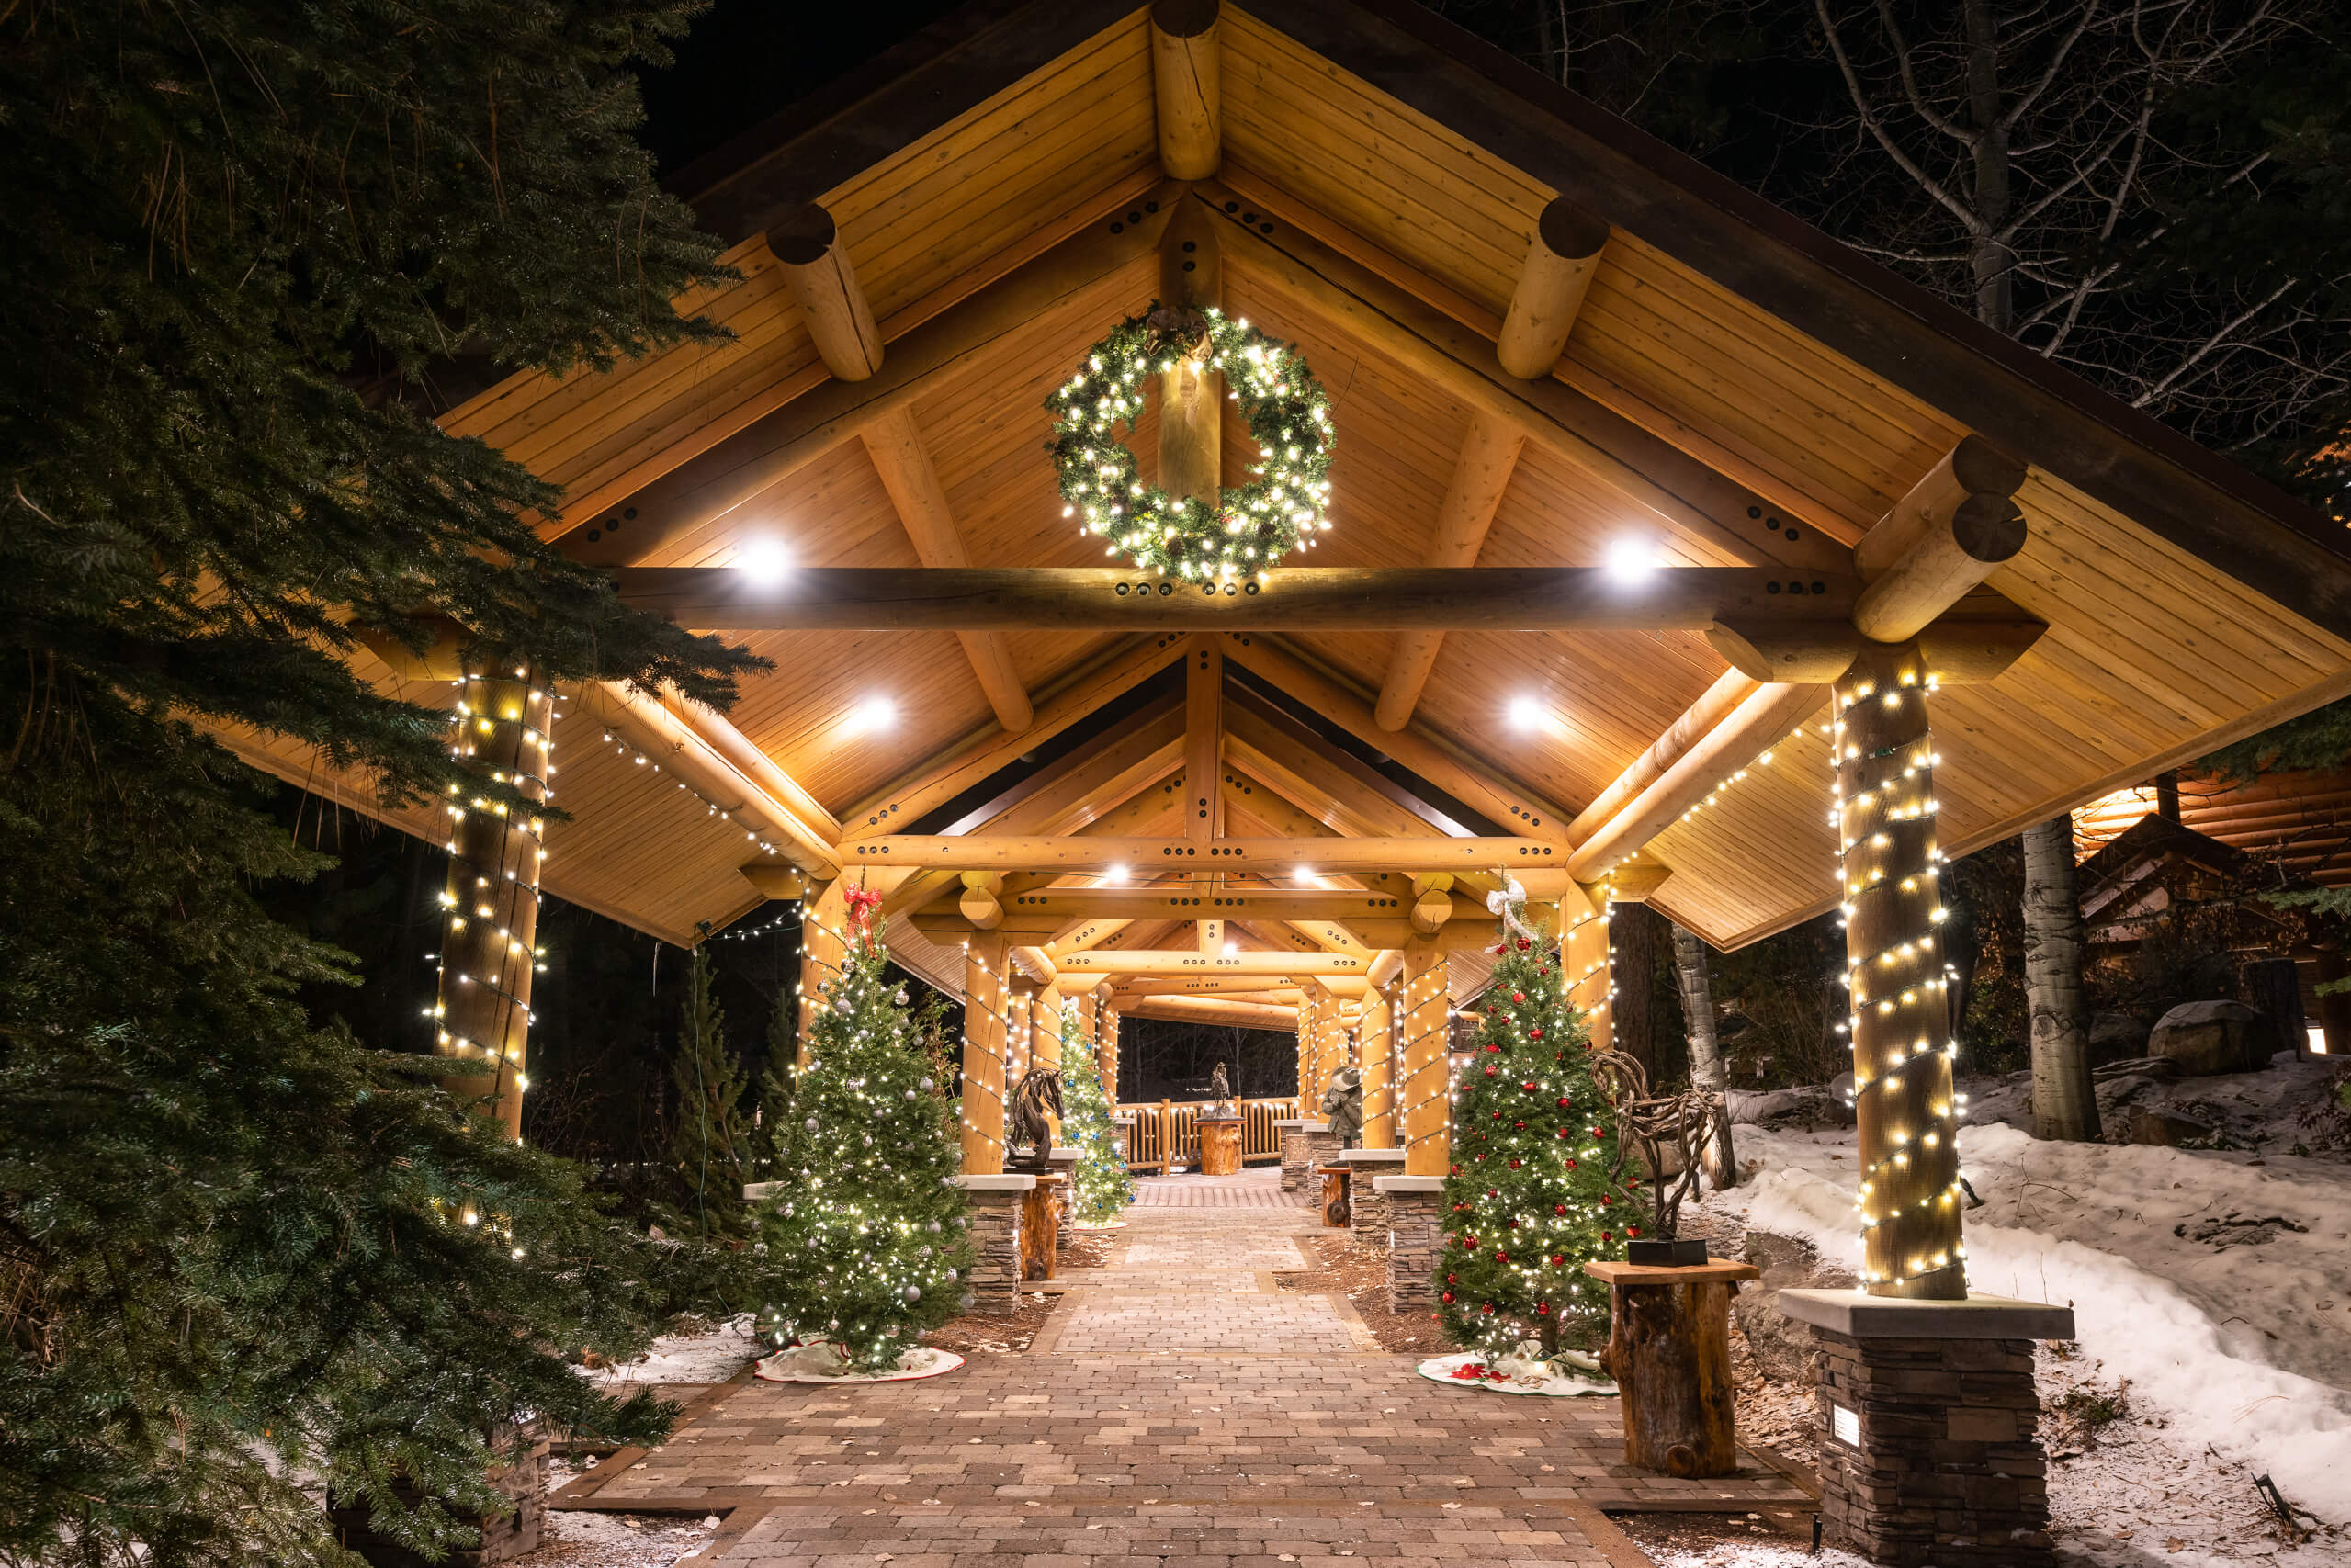 Lodge Christmas decor